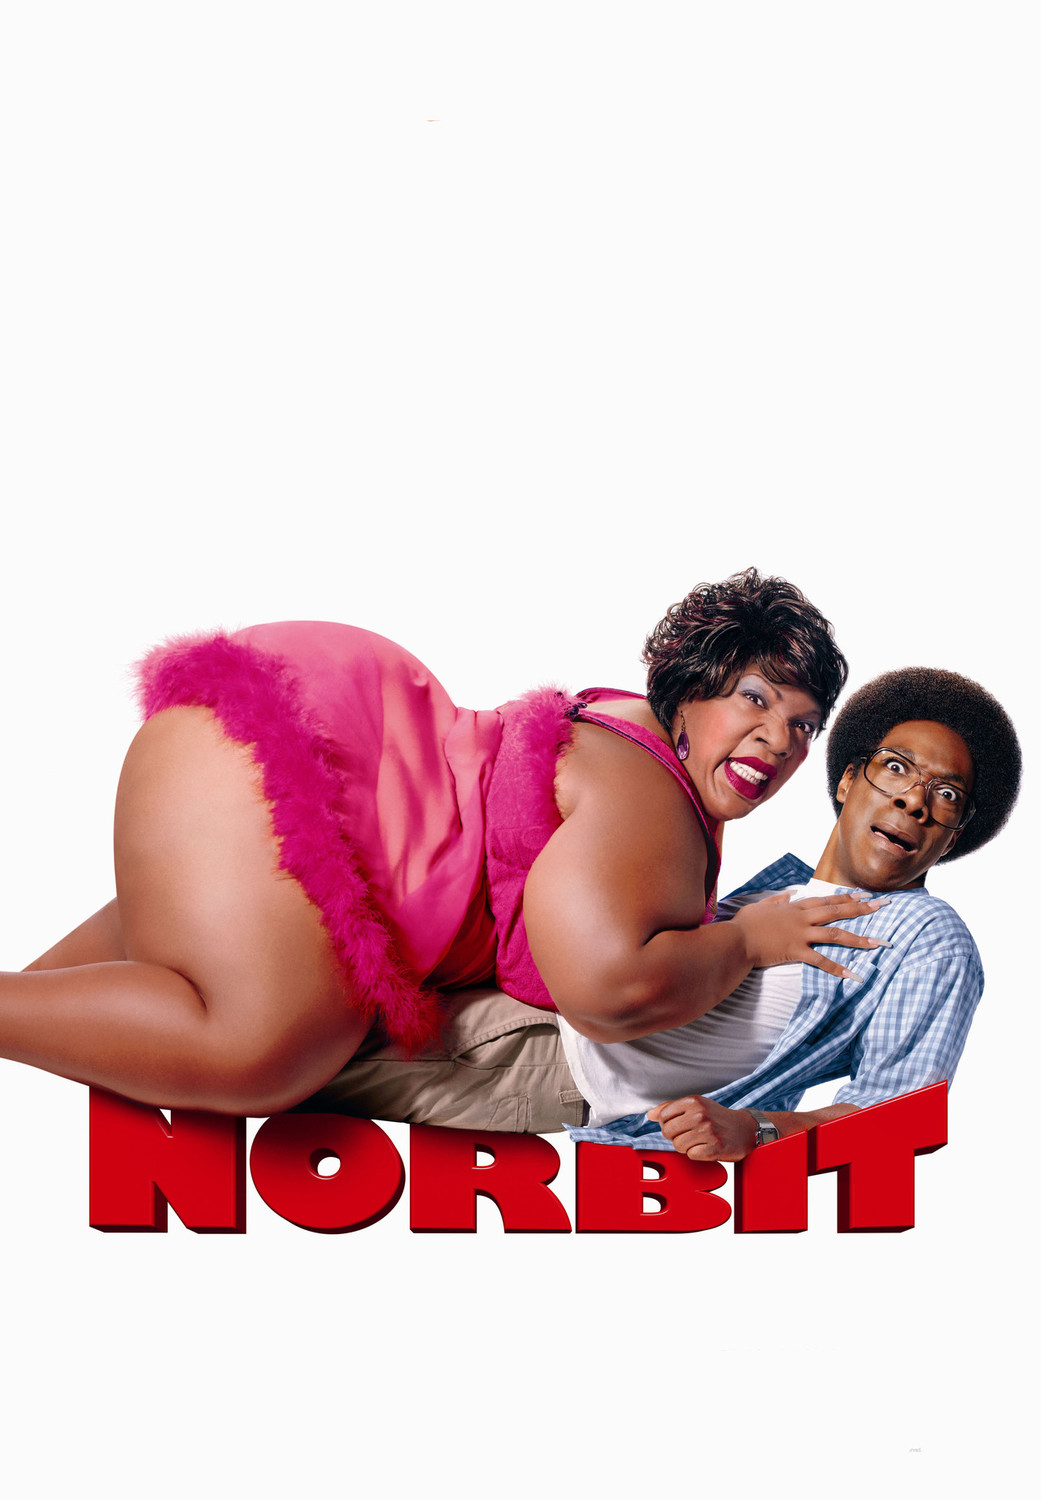 Norbit | Fandíme filmu